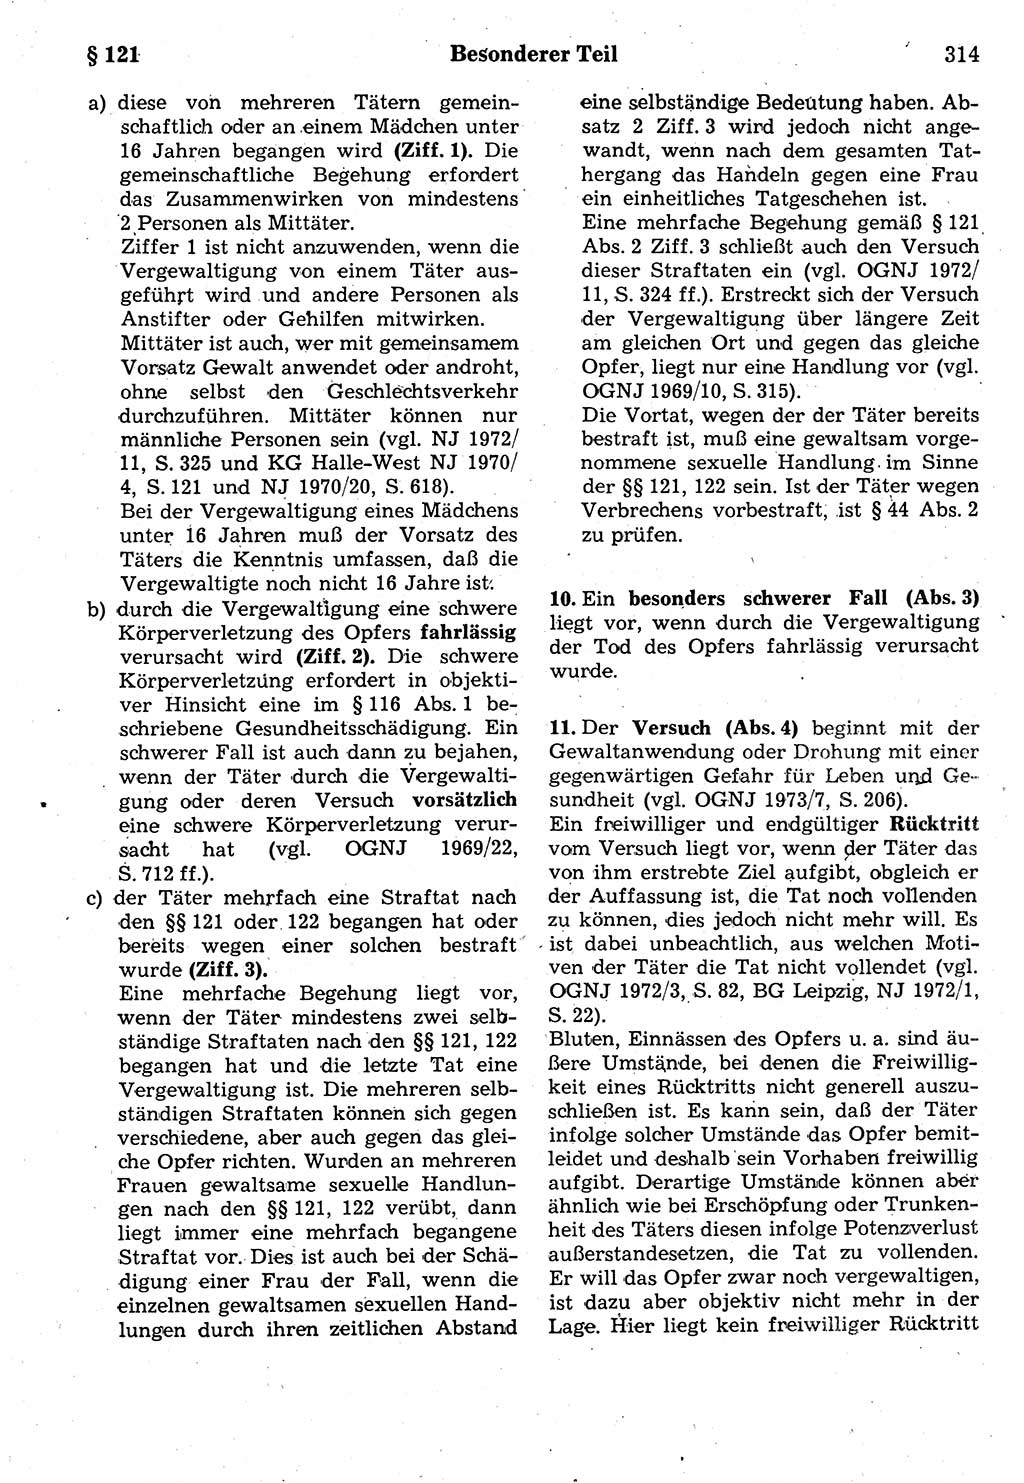 Strafrecht der Deutschen Demokratischen Republik (DDR), Kommentar zum Strafgesetzbuch (StGB) 1987, Seite 314 (Strafr. DDR Komm. StGB 1987, S. 314)